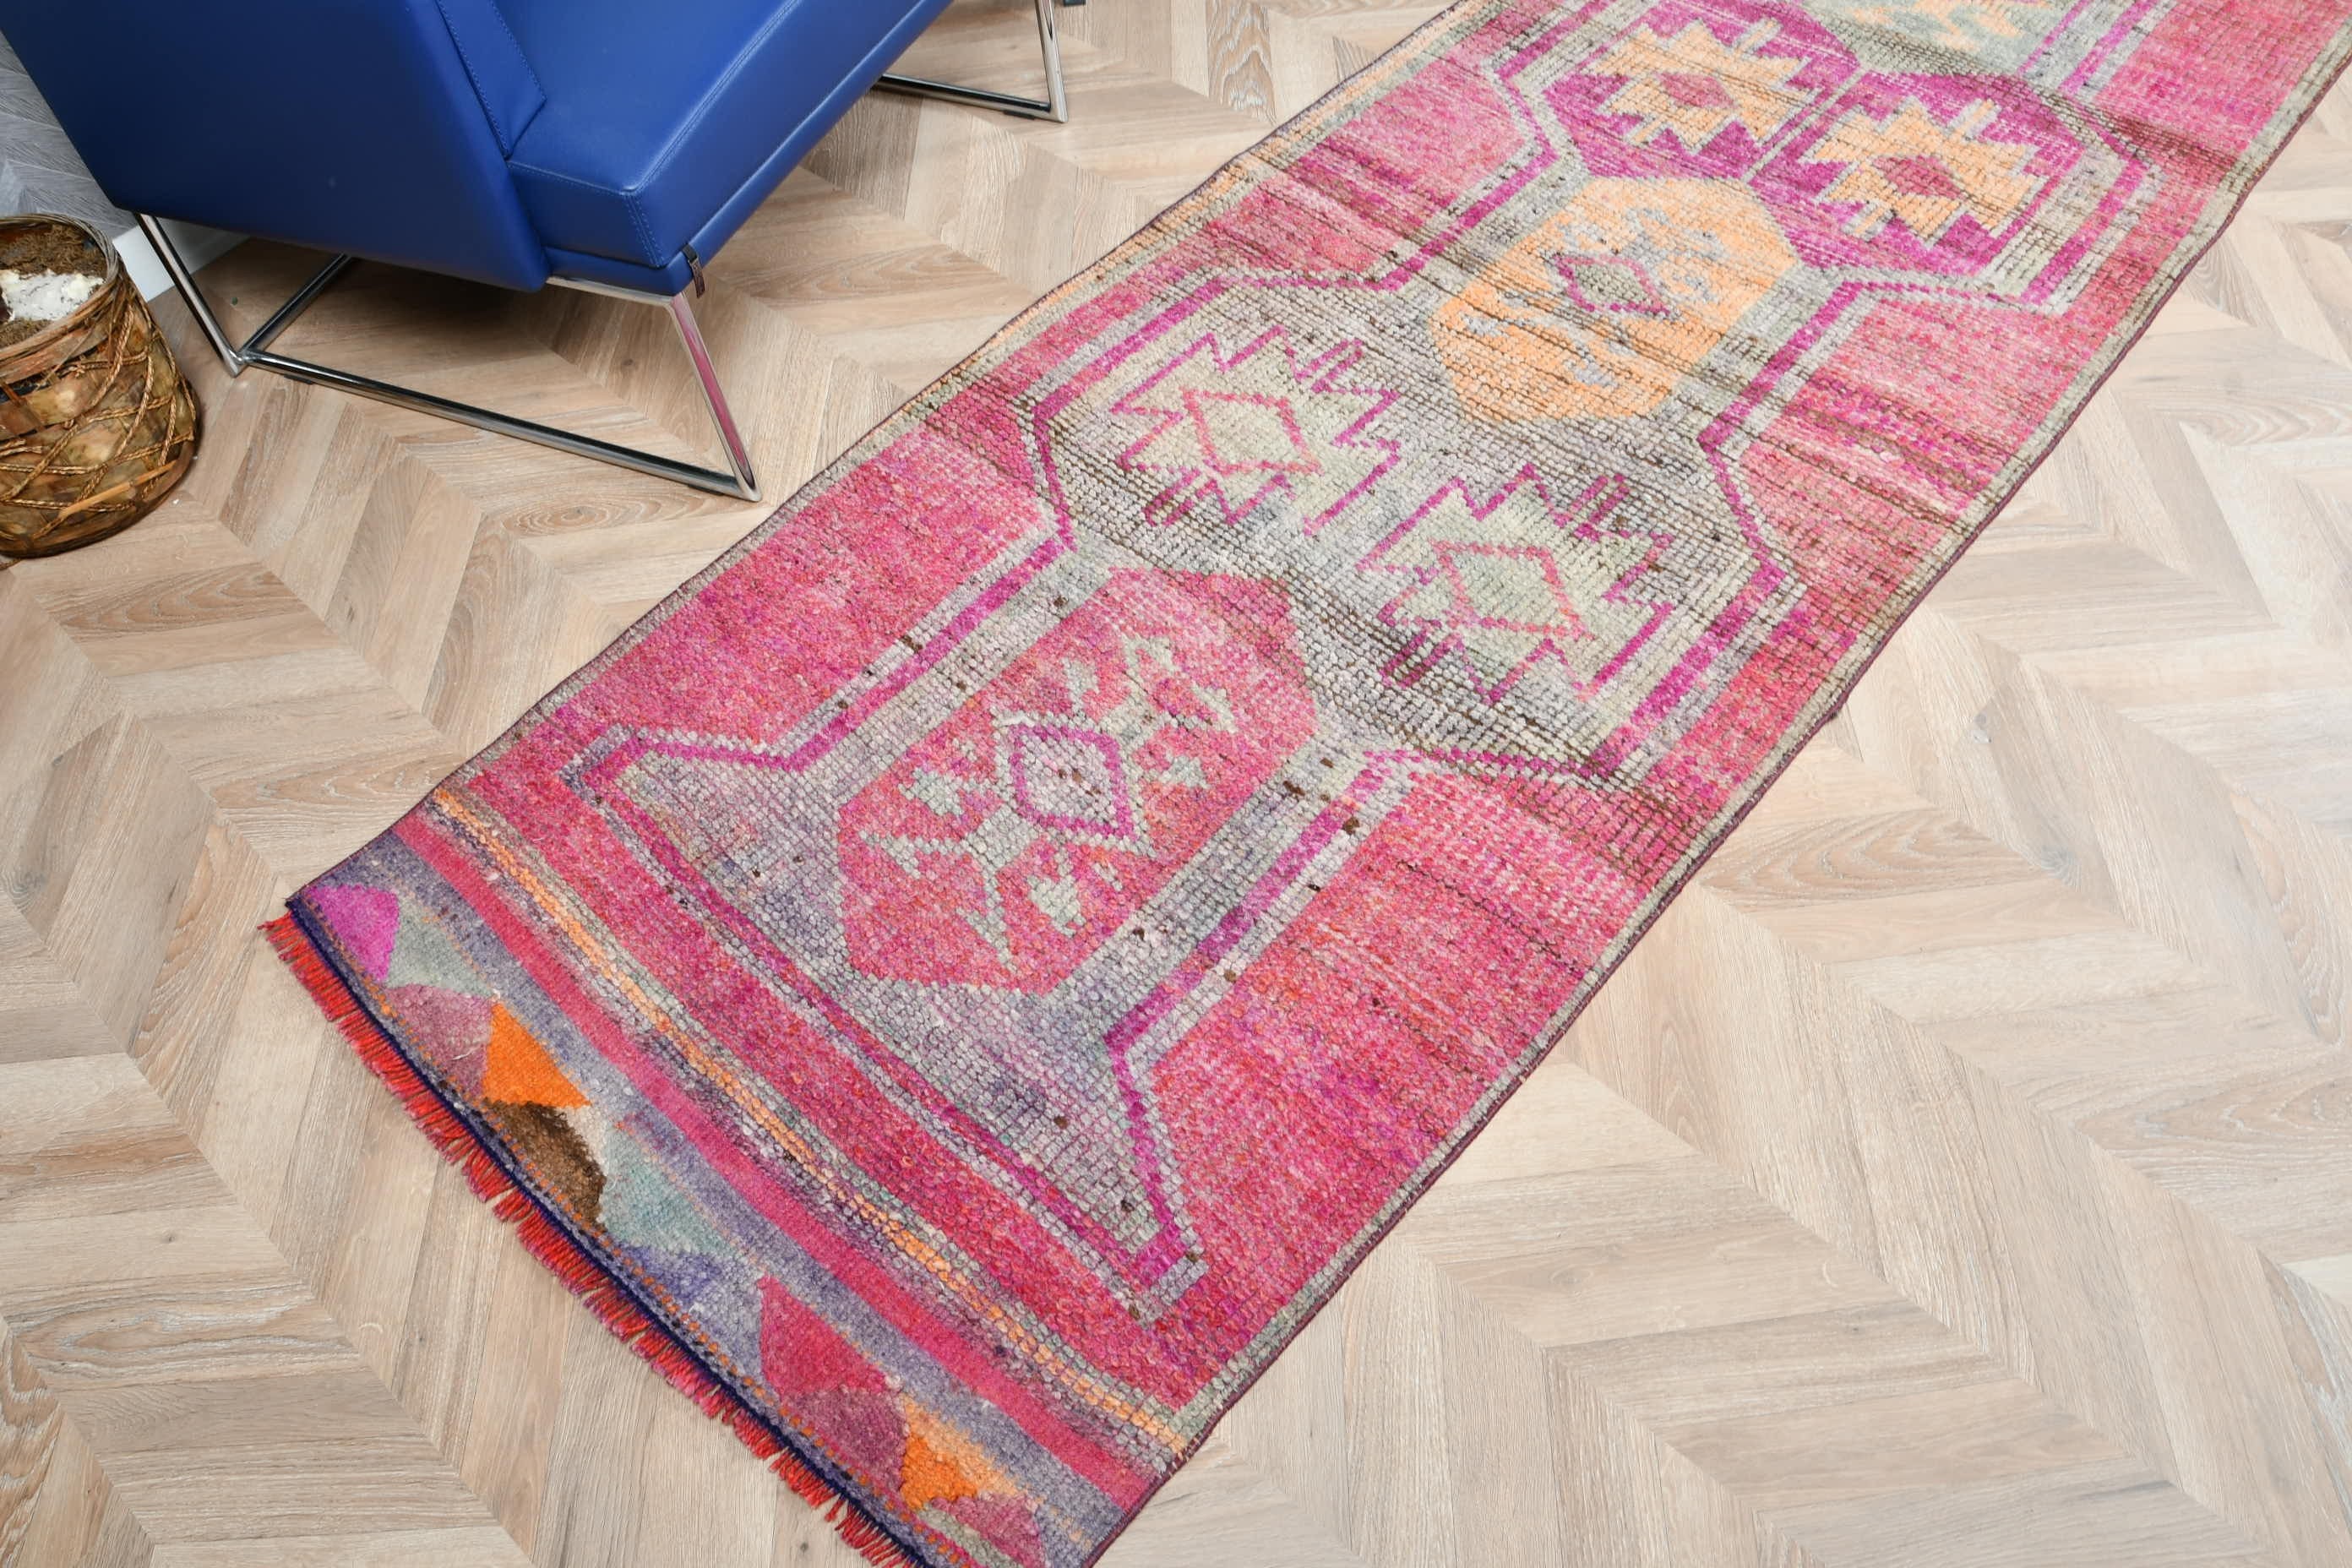 Vintage Rug, Bohemian Rugs, Turkish Rugs, Hallway Rug, Pink Floor Rug, 2.9x11.7 ft Runner Rugs, Rugs for Hallway, Wool Rug, Antique Rug